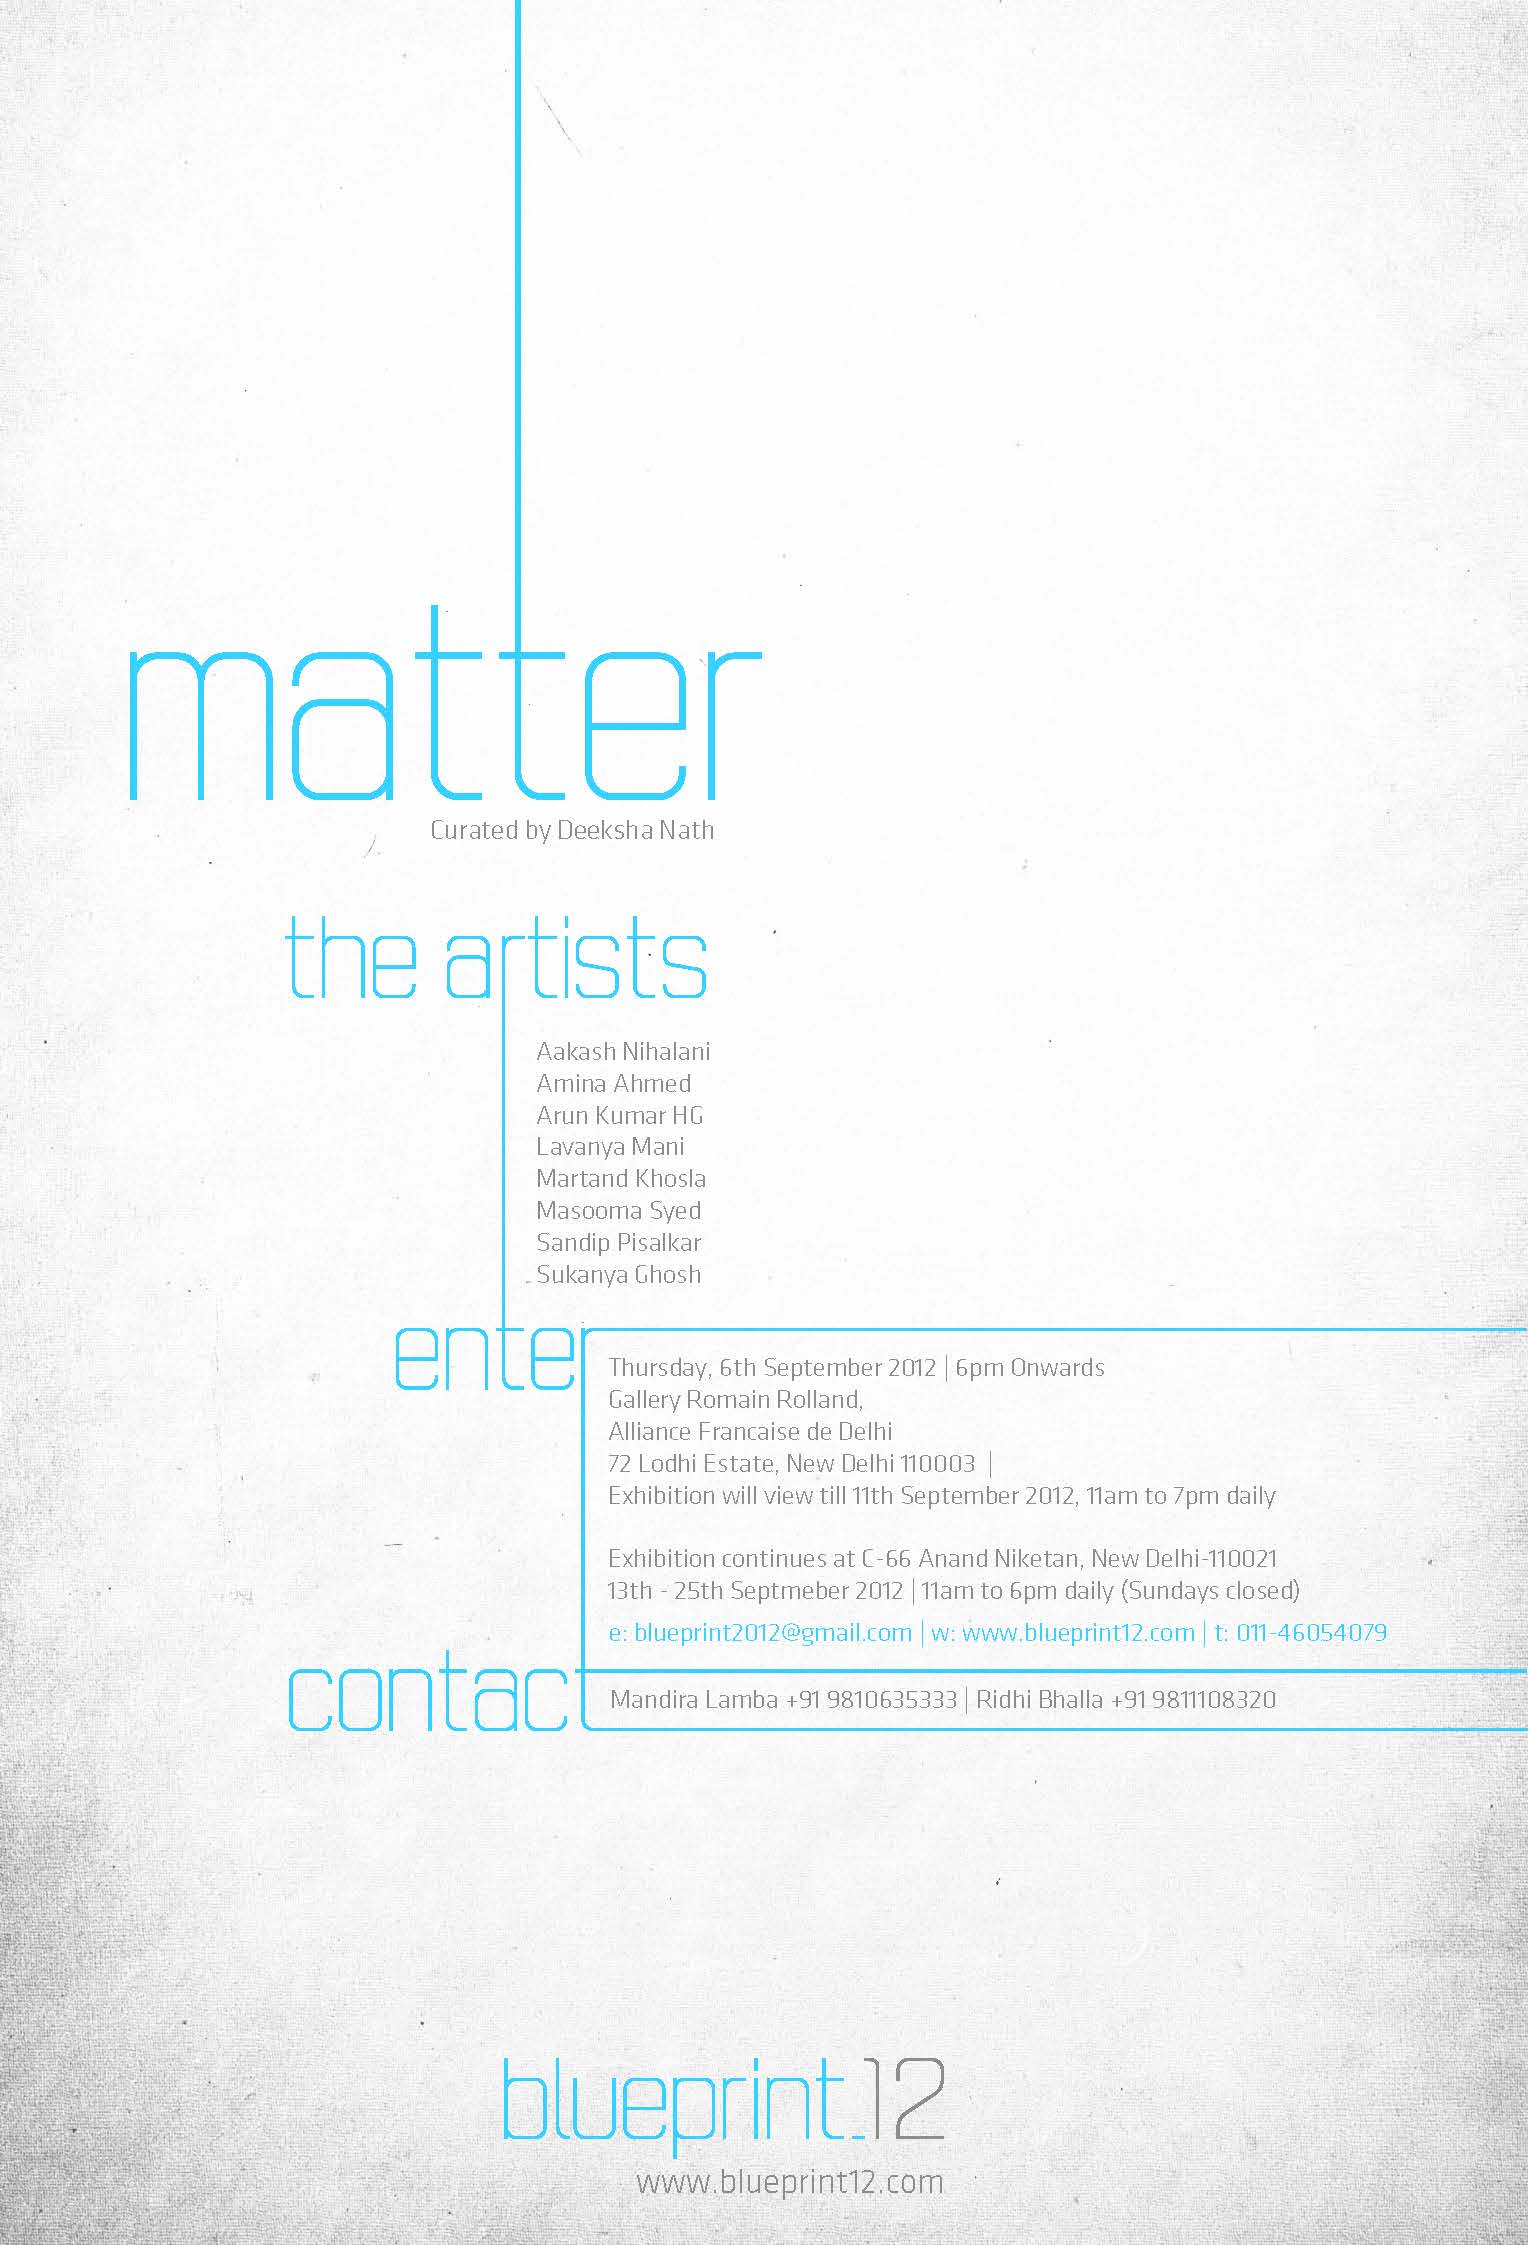 Matter curated by Deeksha Nath Blueprint12 launch show